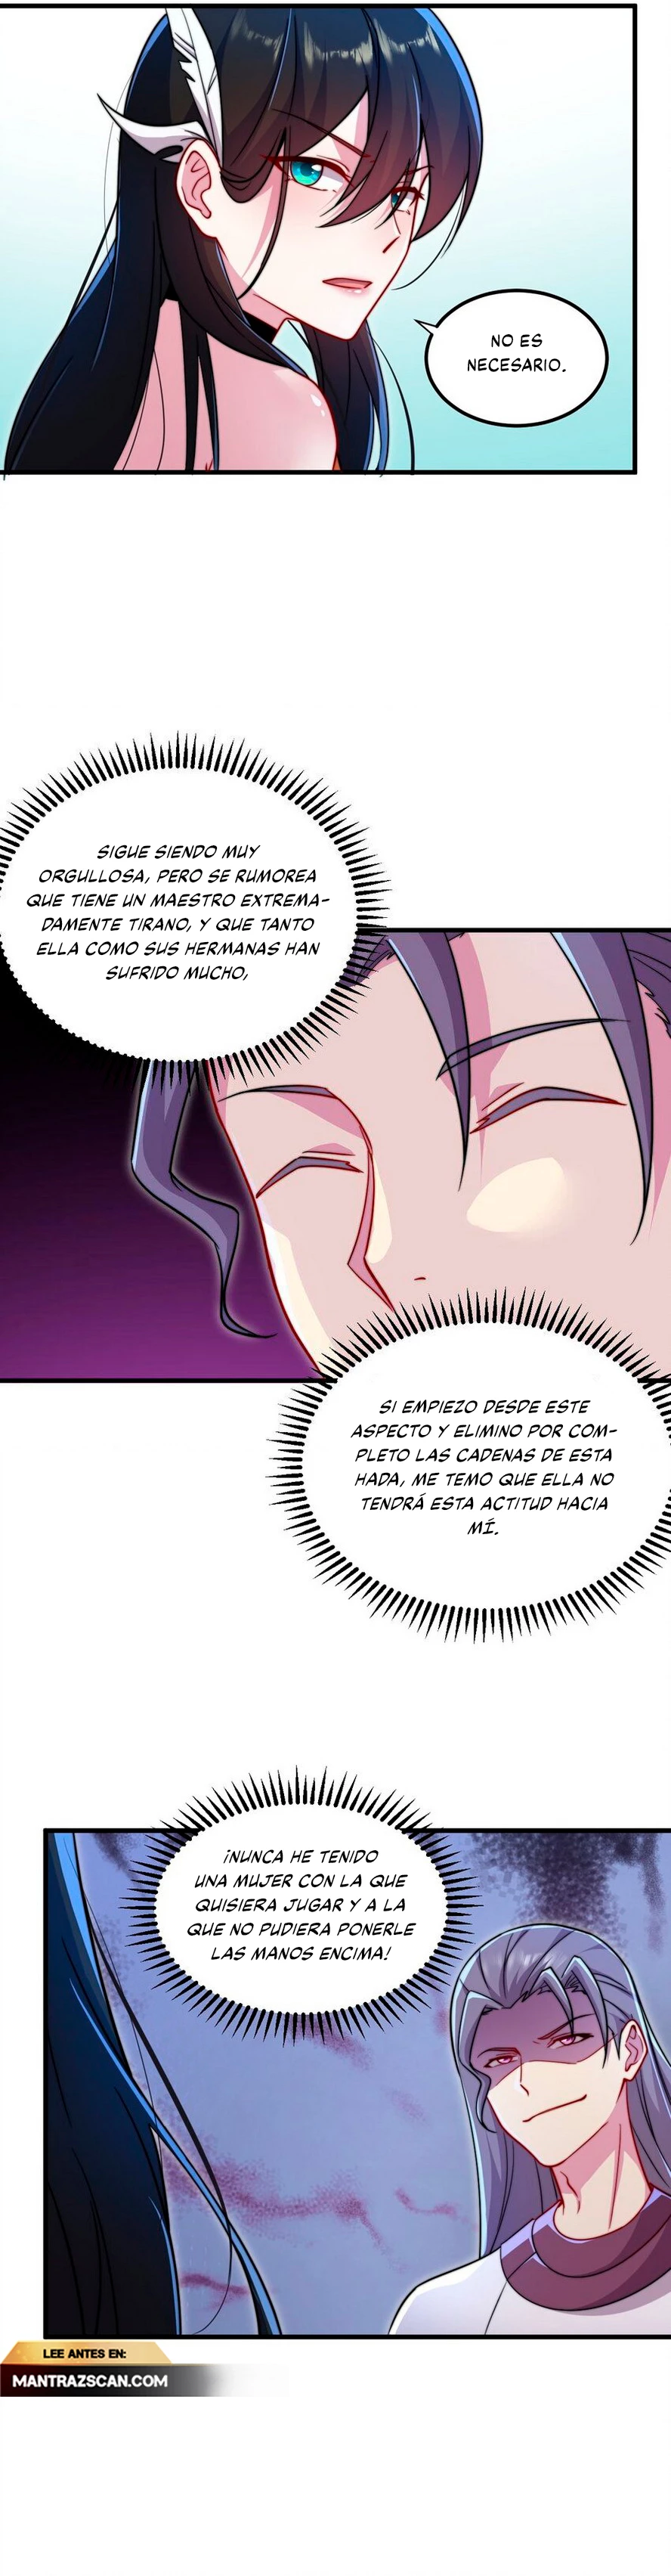 Manga Yo, el invencible villano maestro con mis aprendices Chapter 42 image number 8